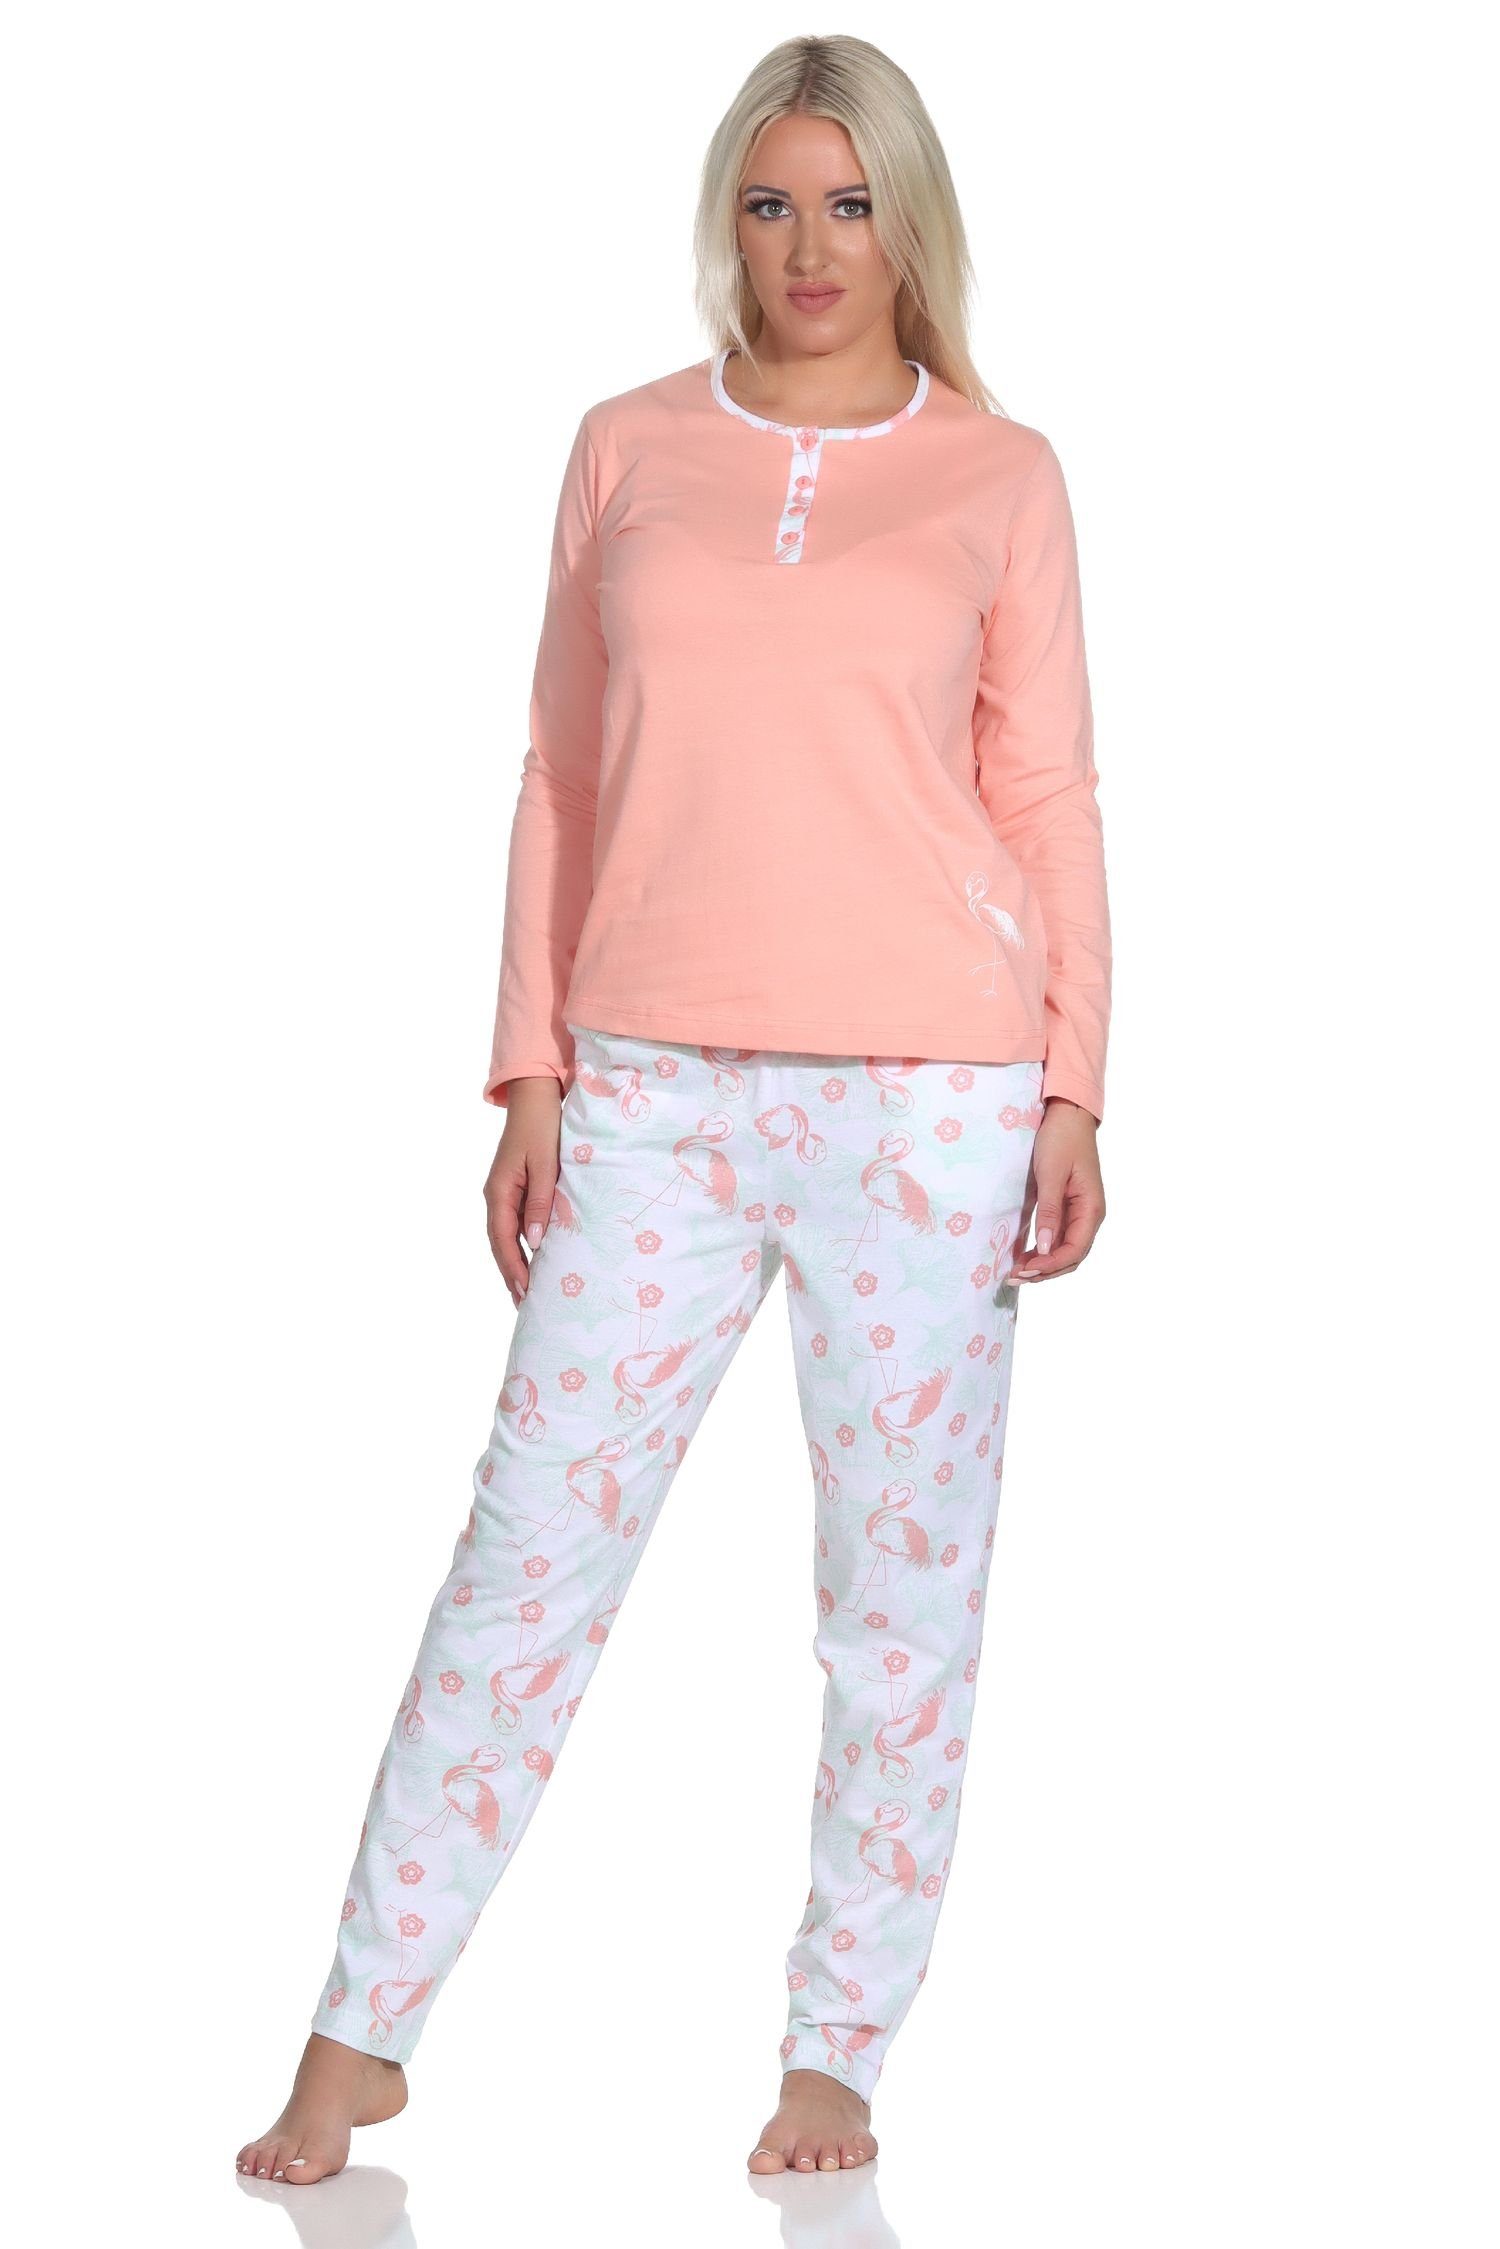 Hals mit Knopfleiste und am Normann Langarm Damen Flamingo apricot Schlafanzug Pyjama Motiv